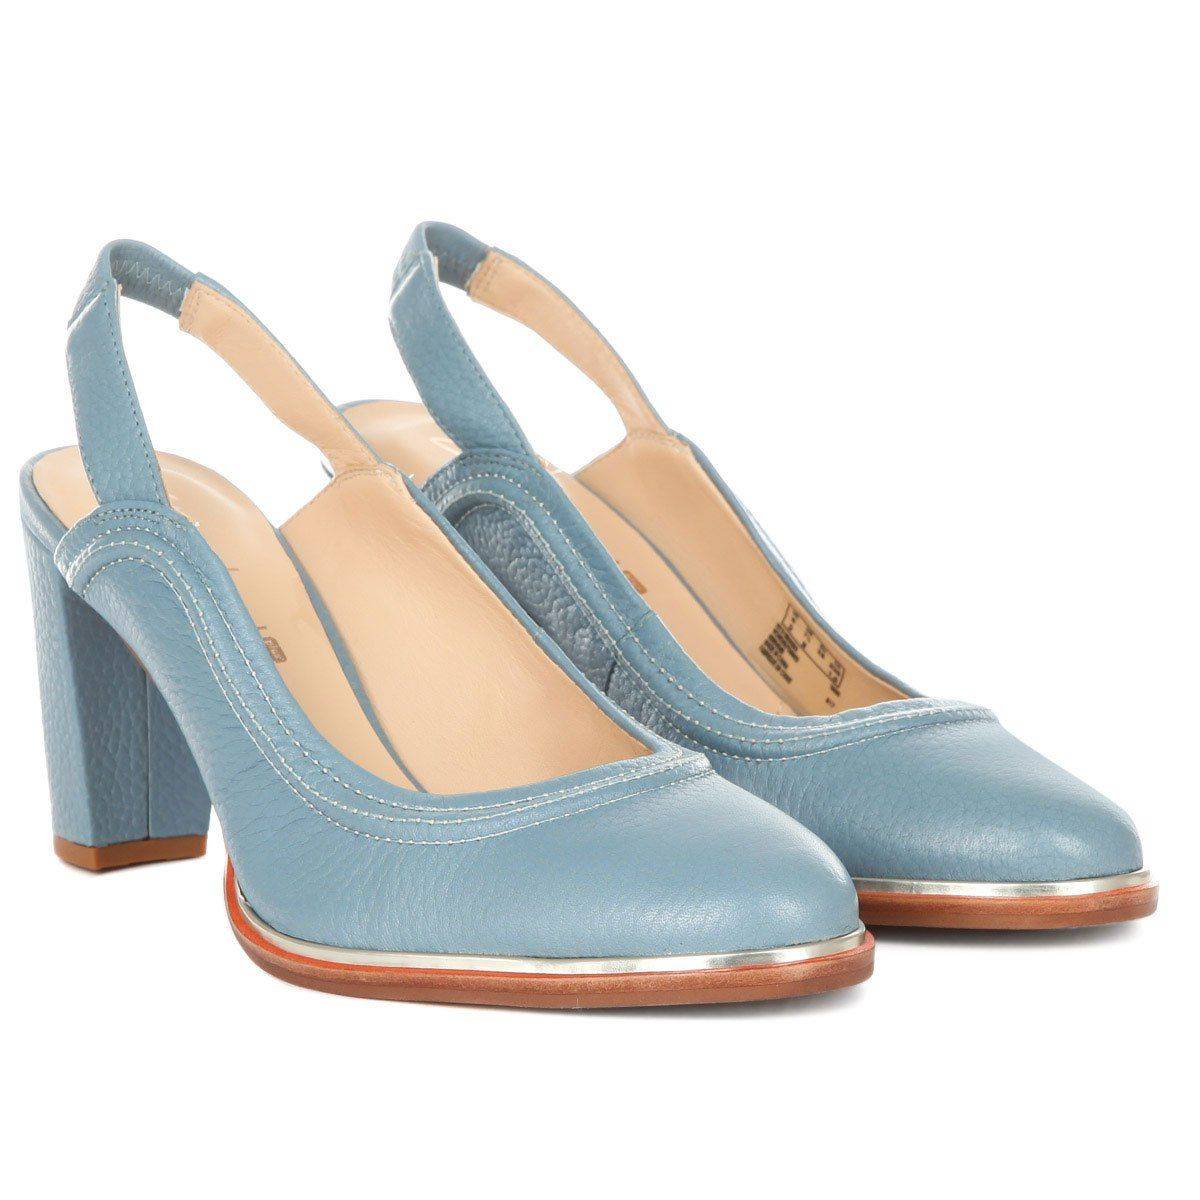 Женские туфли с закрытым мыском/открытой пяткой Clarks(Ellis Ivy 26131996), синие синего цвета